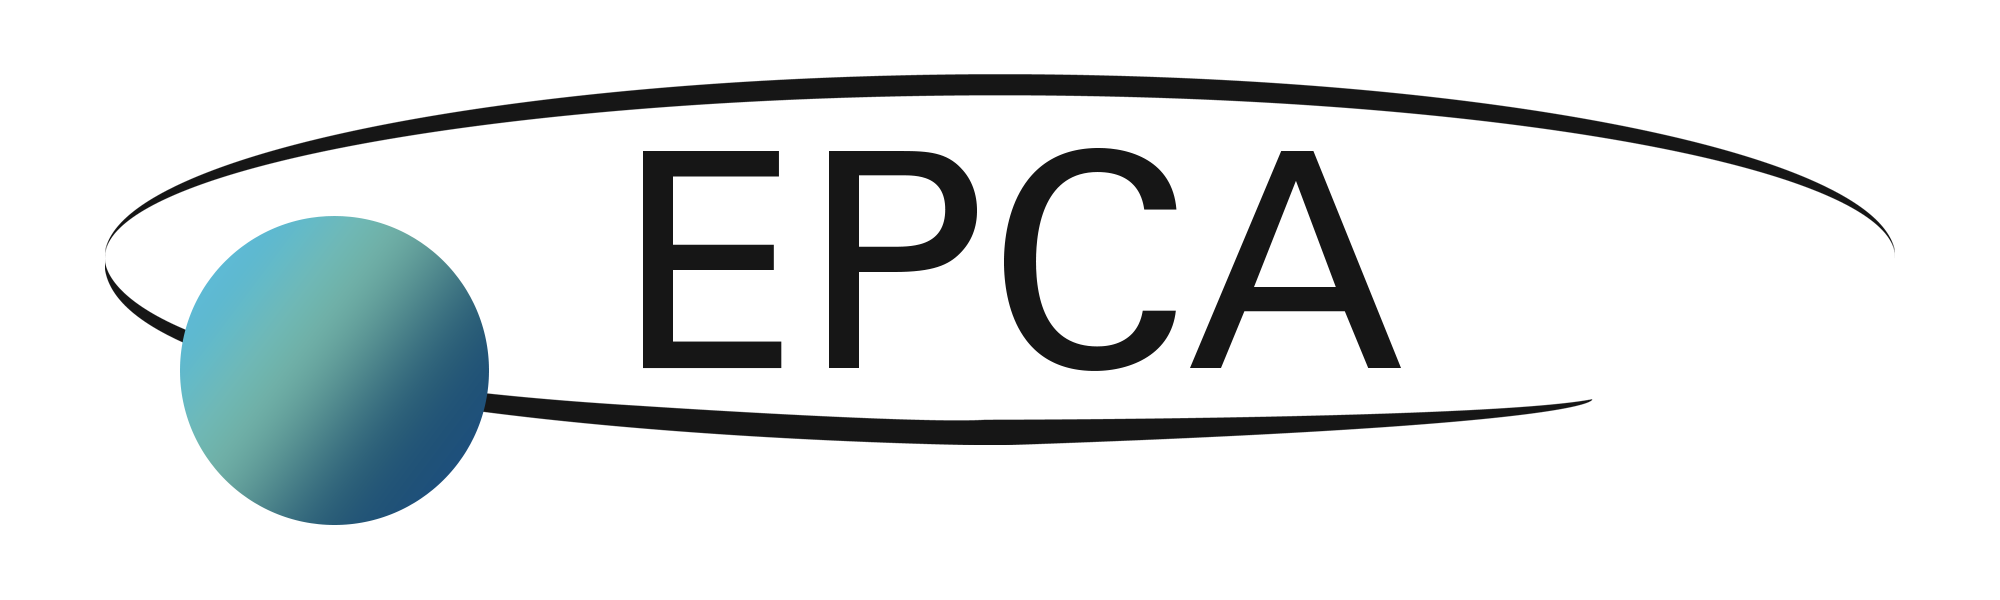 logo-epca-blue